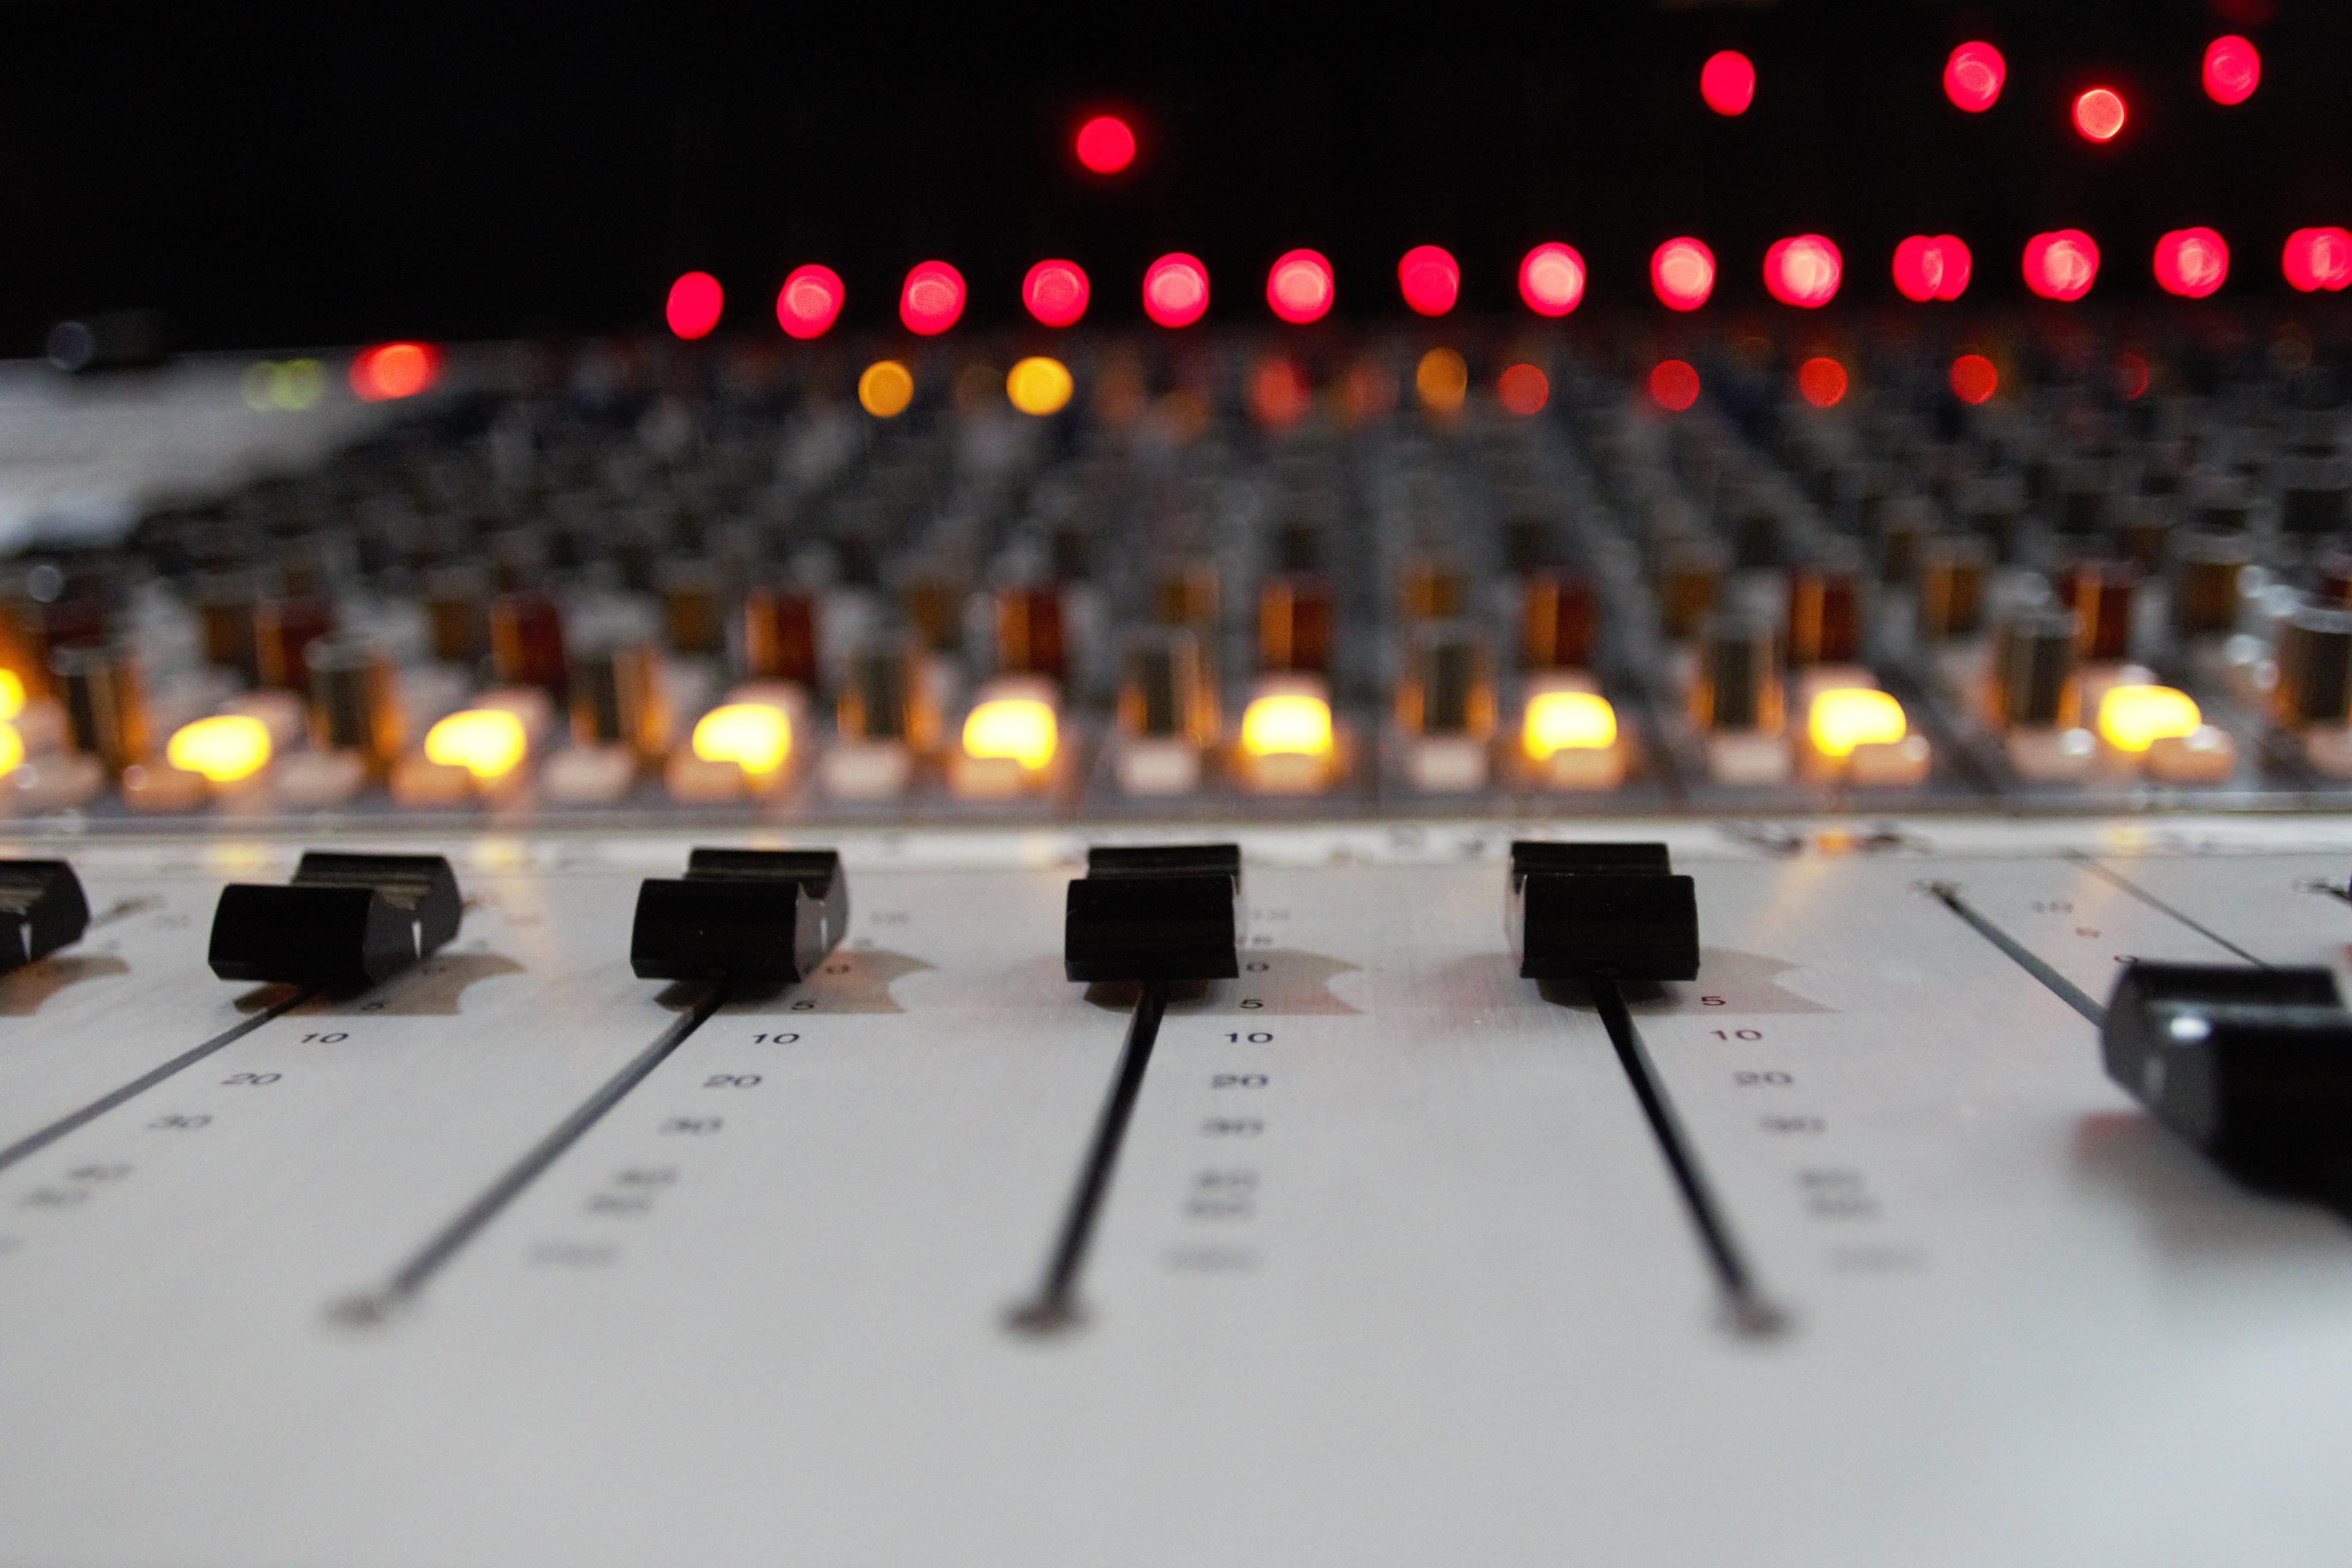 A closeup of a sound board